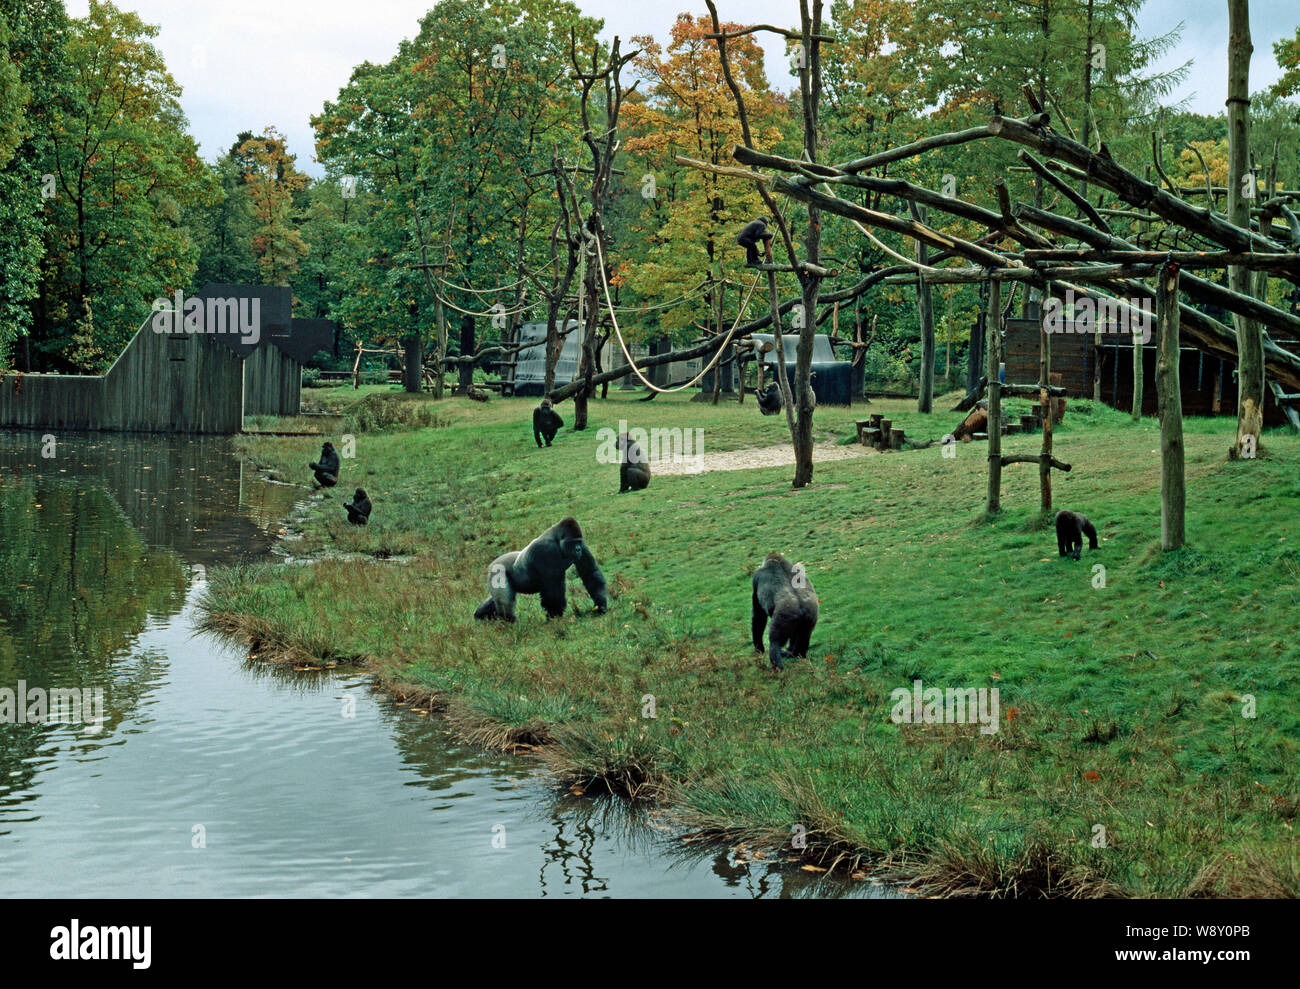 Gabinete de gorila en zoológico holandés buen diseño moderno, incluyendo el enriquecimiento ambiental. Zoo de primates Apenheul Apeldorn, Holanda Foto de stock